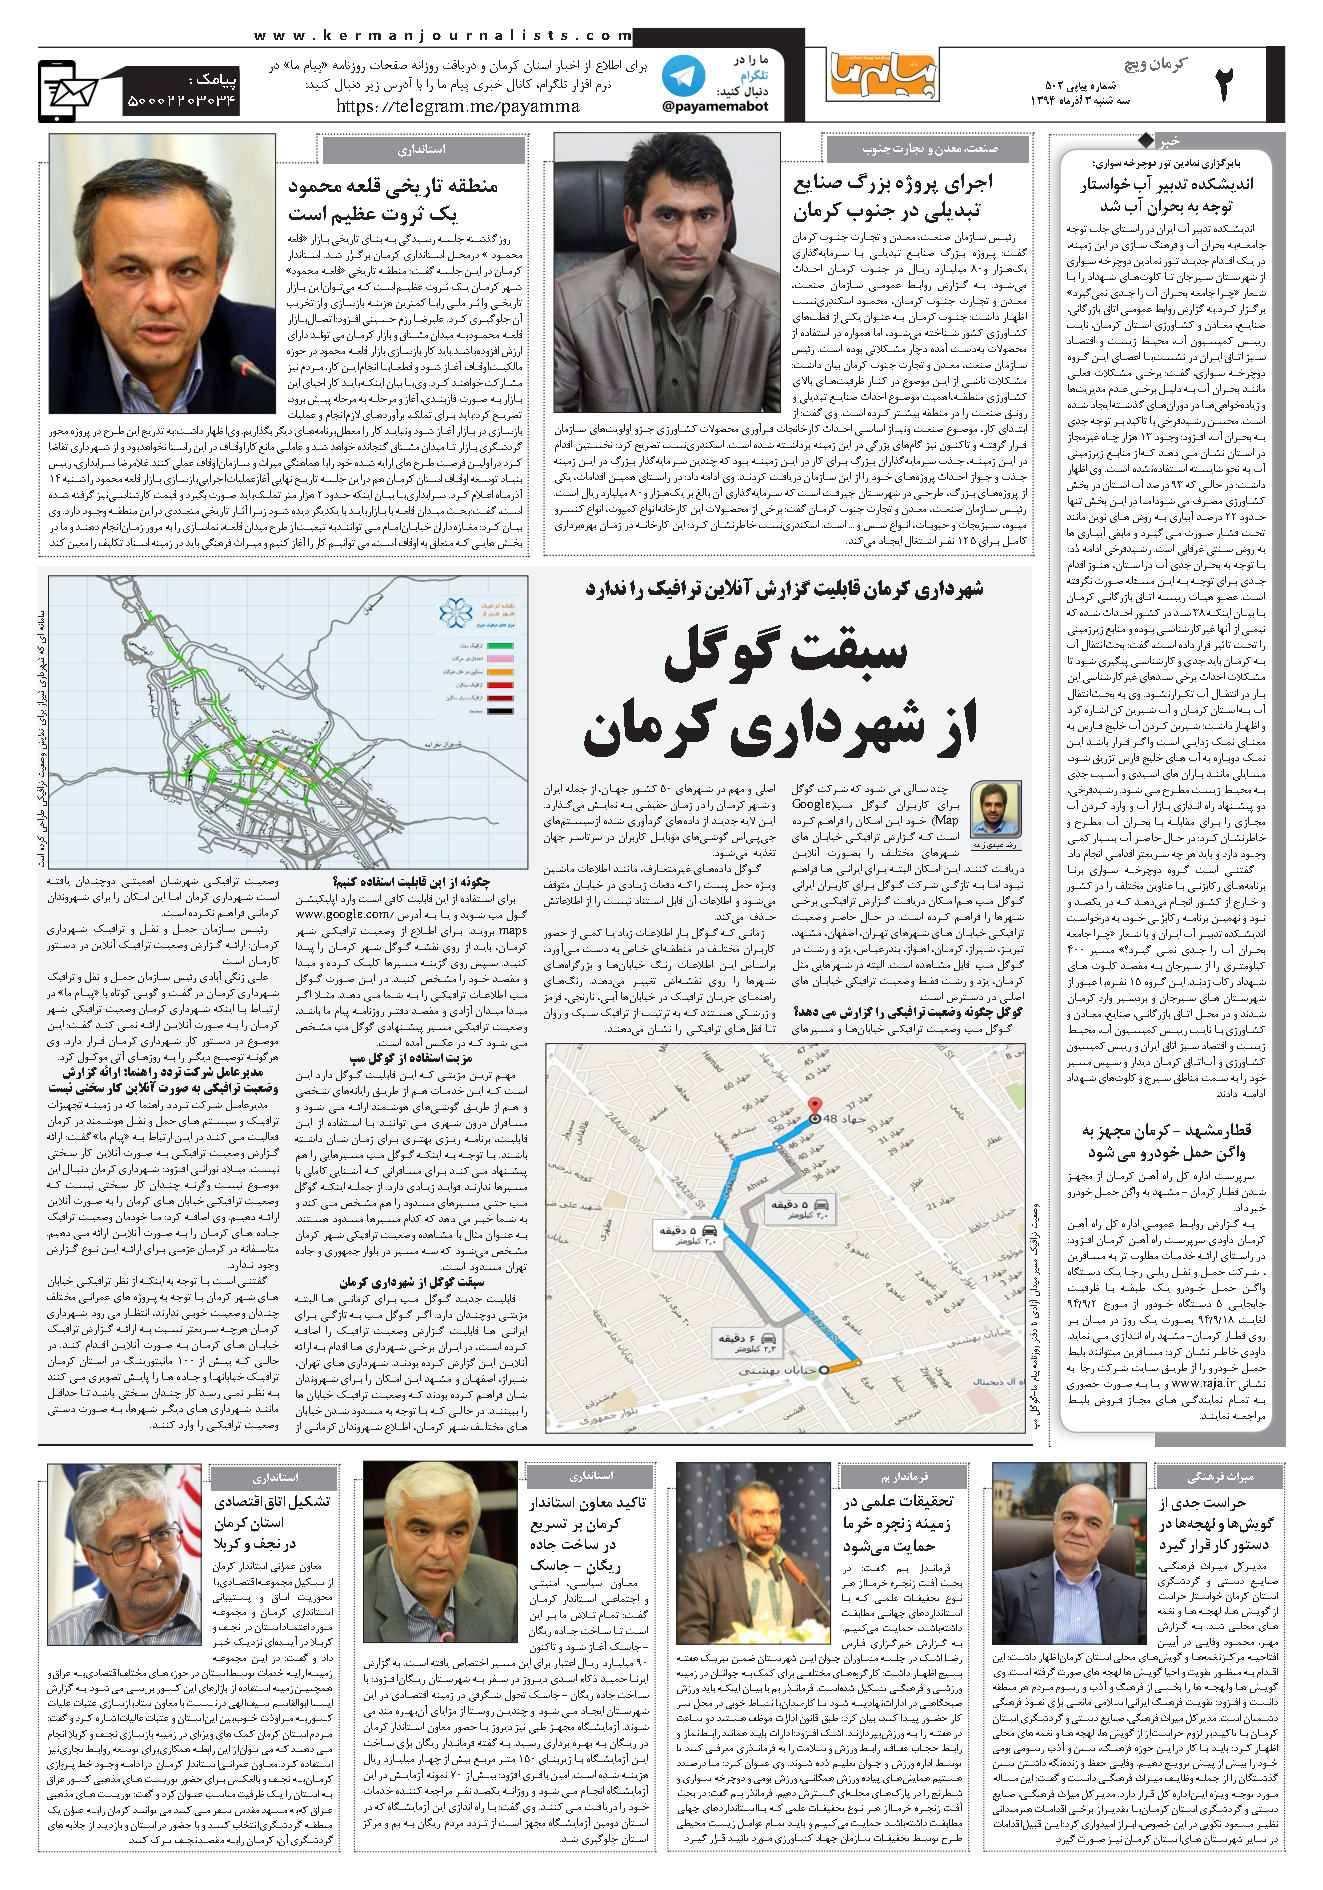 تشکیل اتاق اقتصادی استان کرمان  در نجف و کربلا